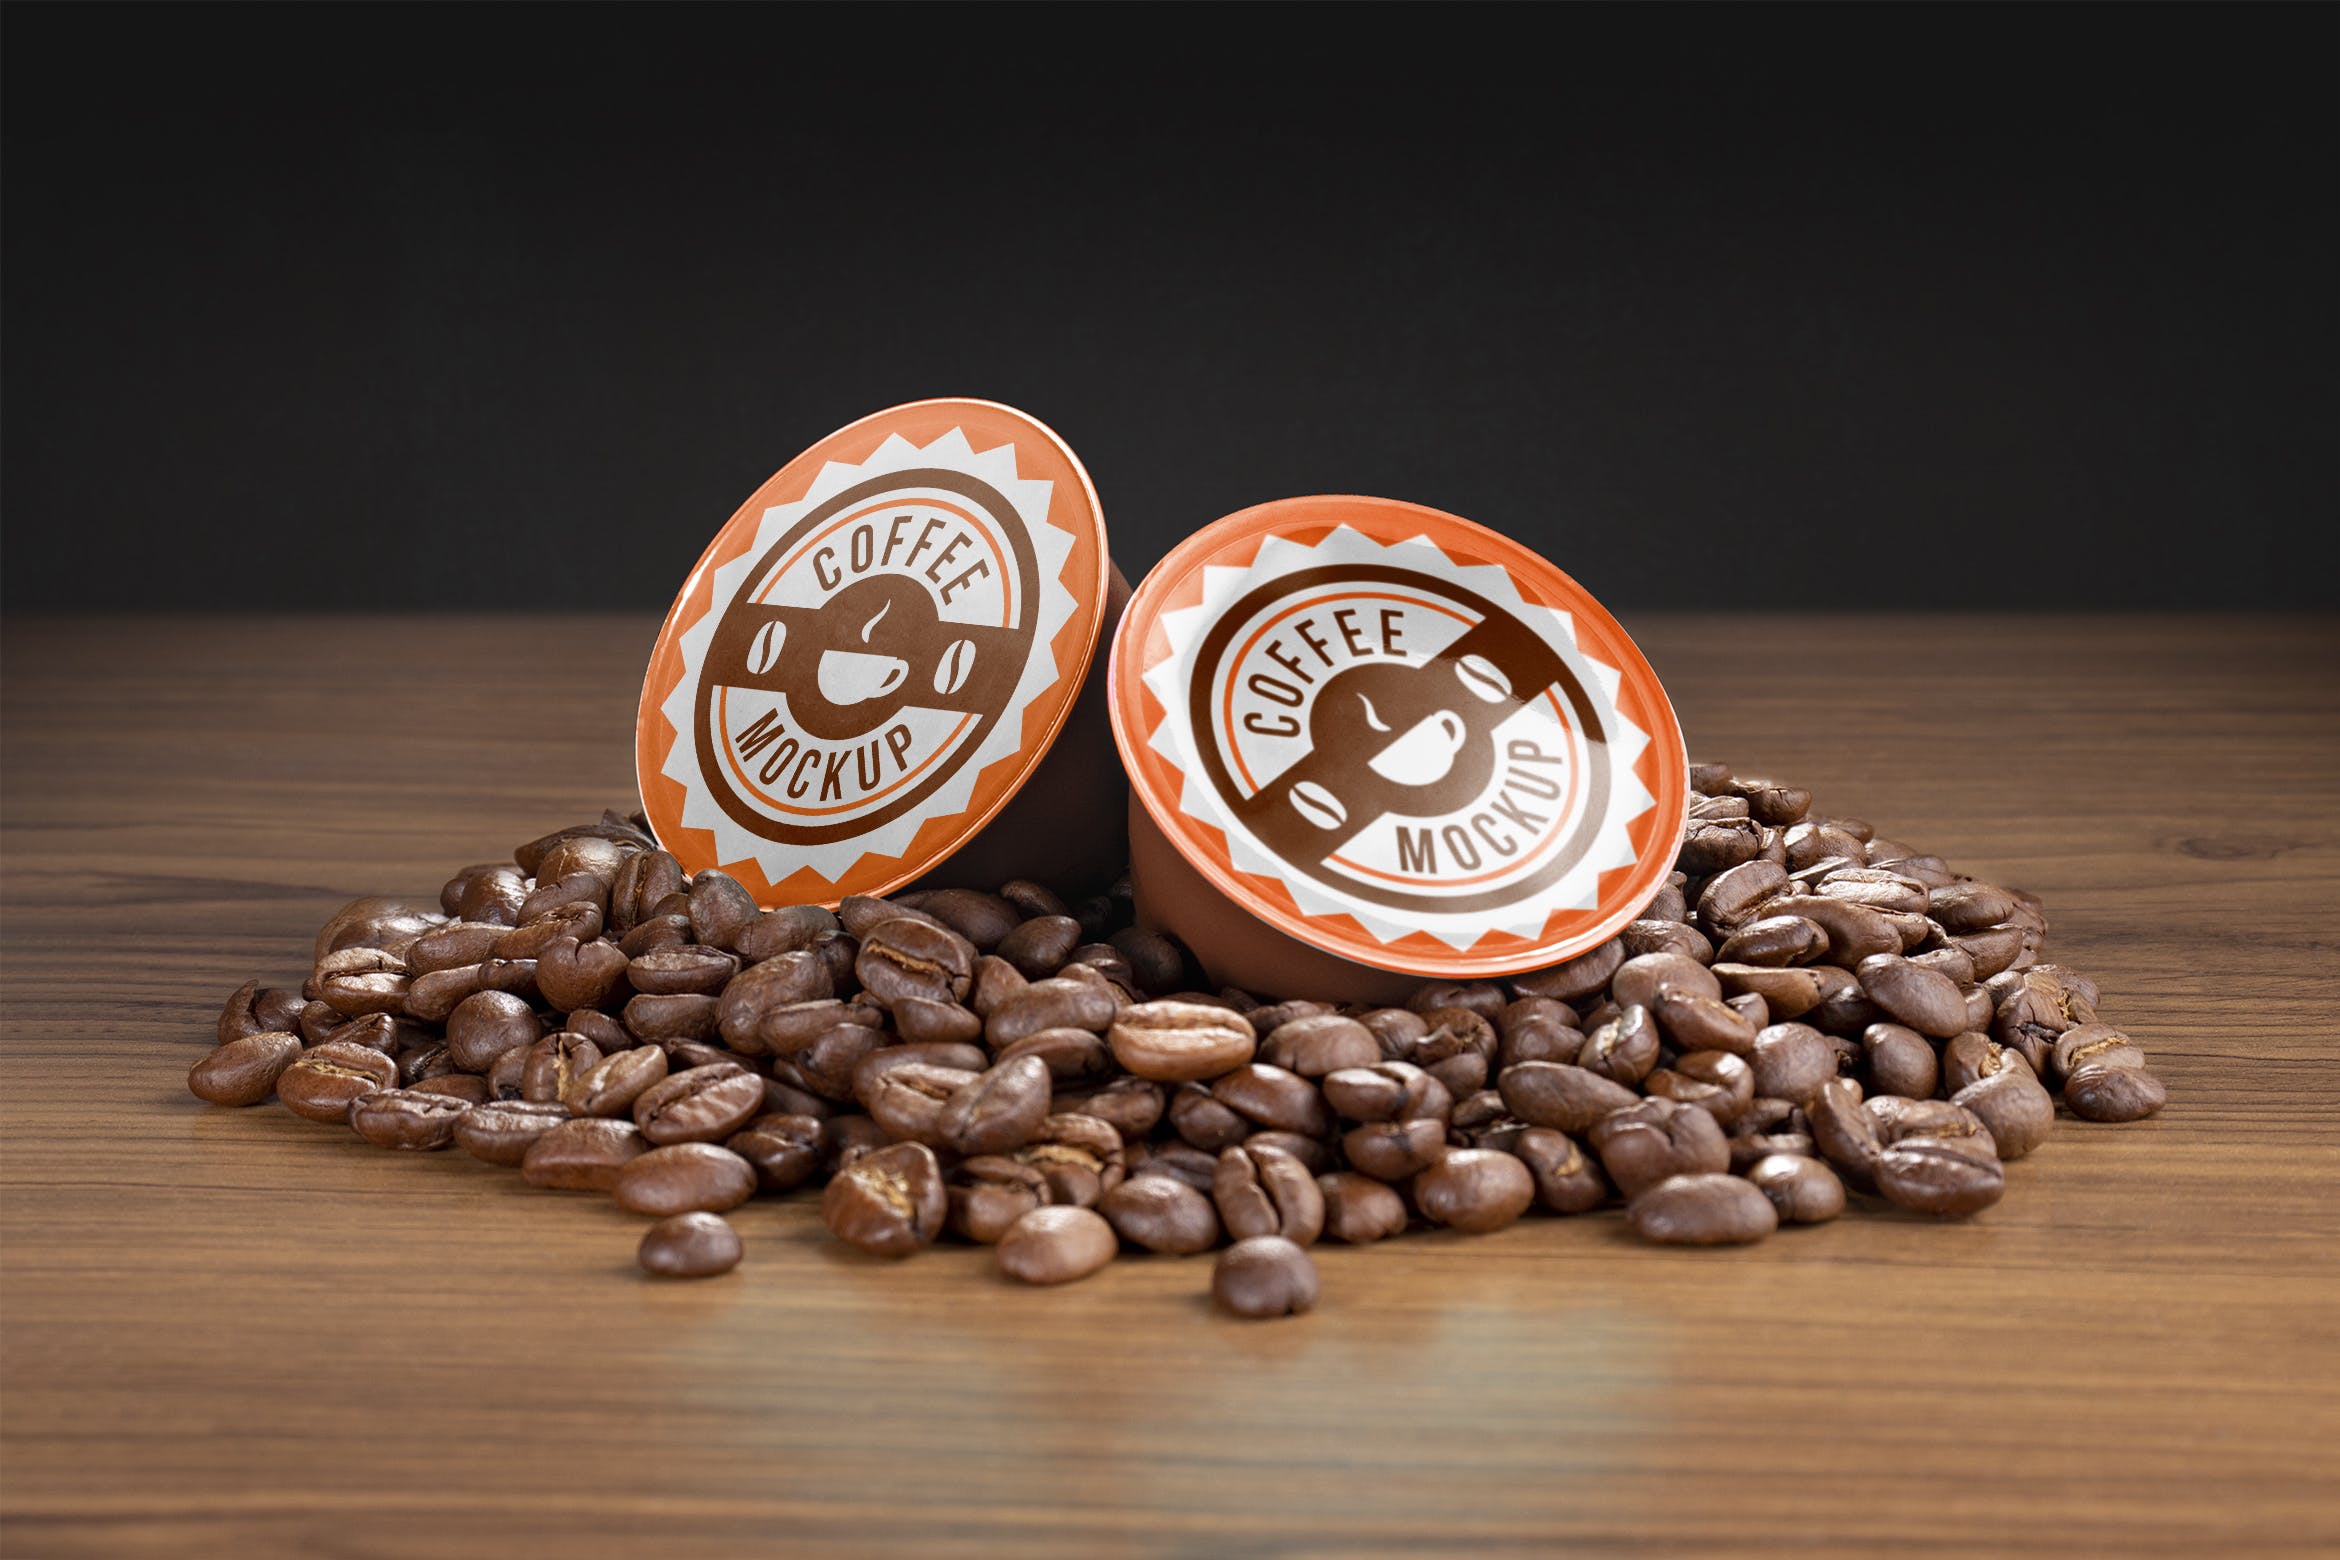 咖啡胶囊外包装设计大洋岛精选模板 Coffee capsule mockup插图